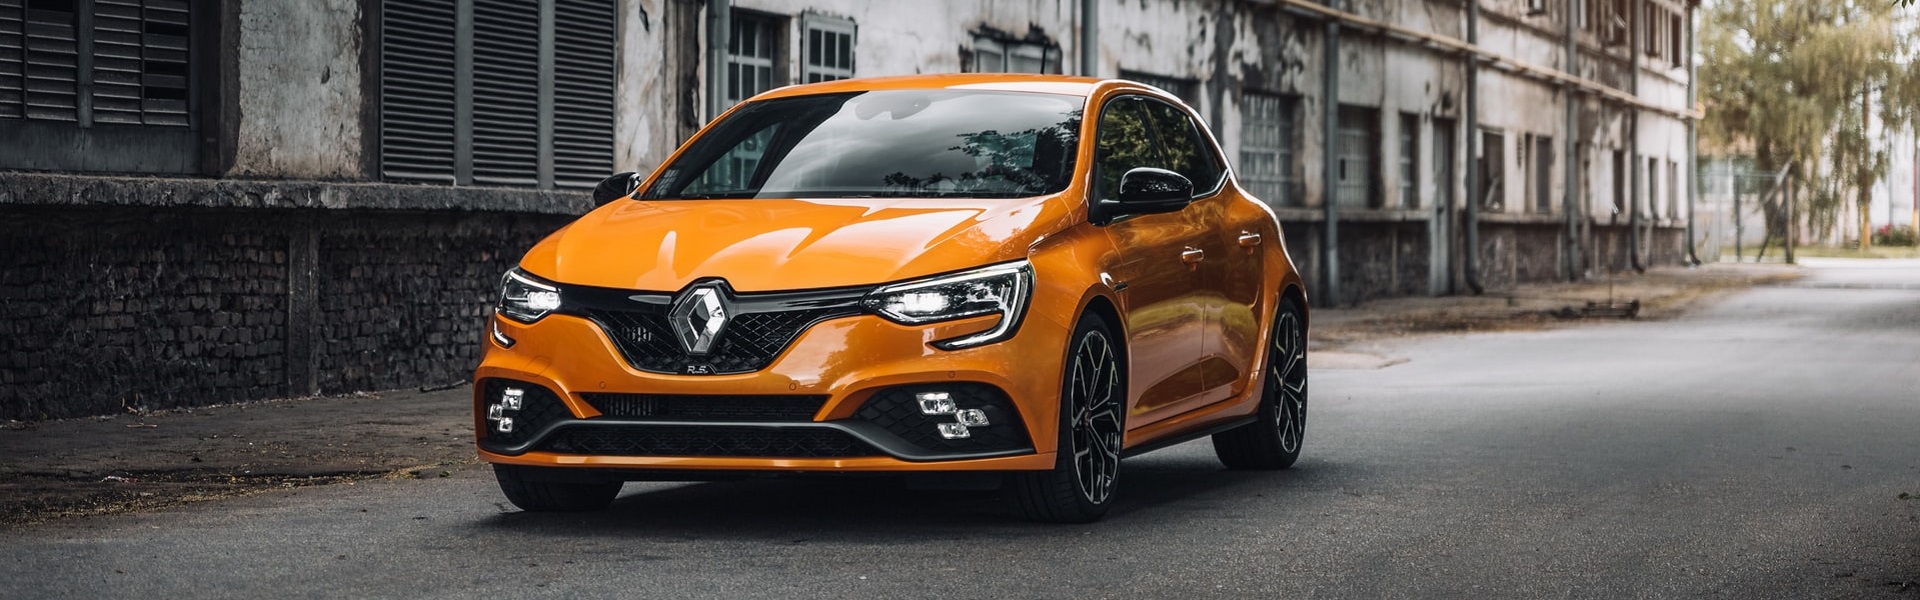 Kesice Za Kafu | Renault delovi